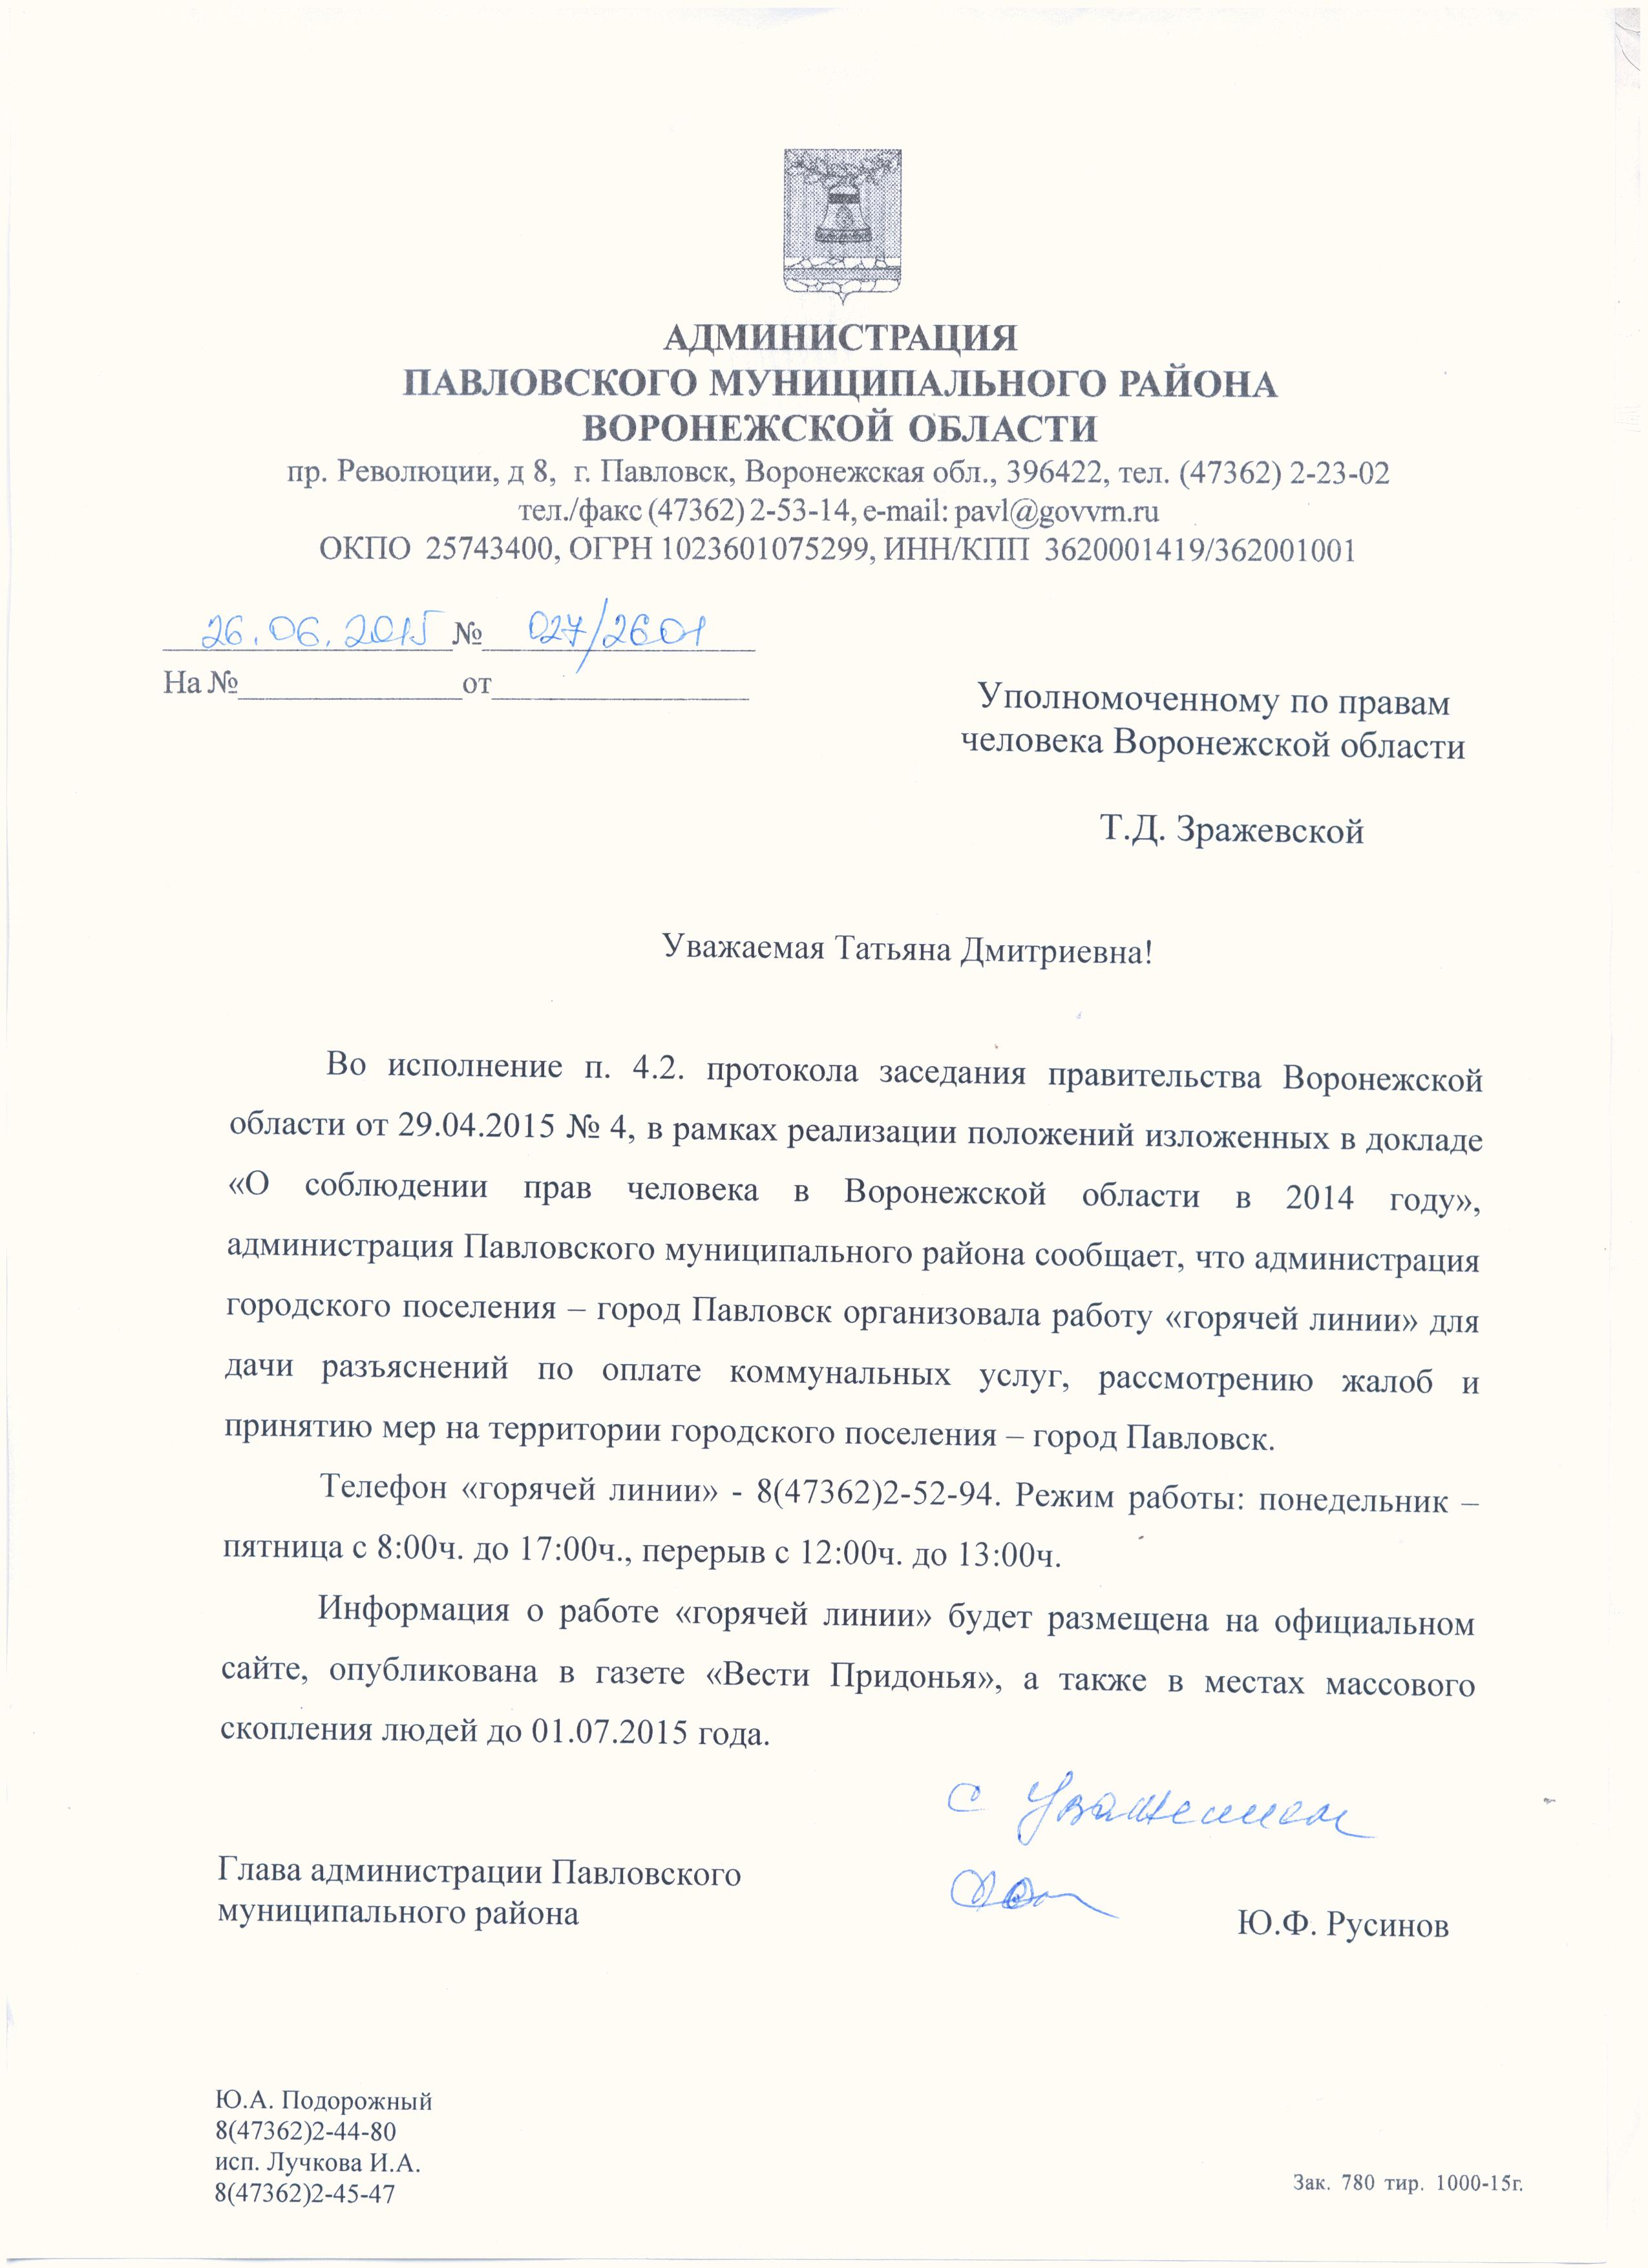 files:pavlovskij_municipalnyj_rajon_otchjot.jpg